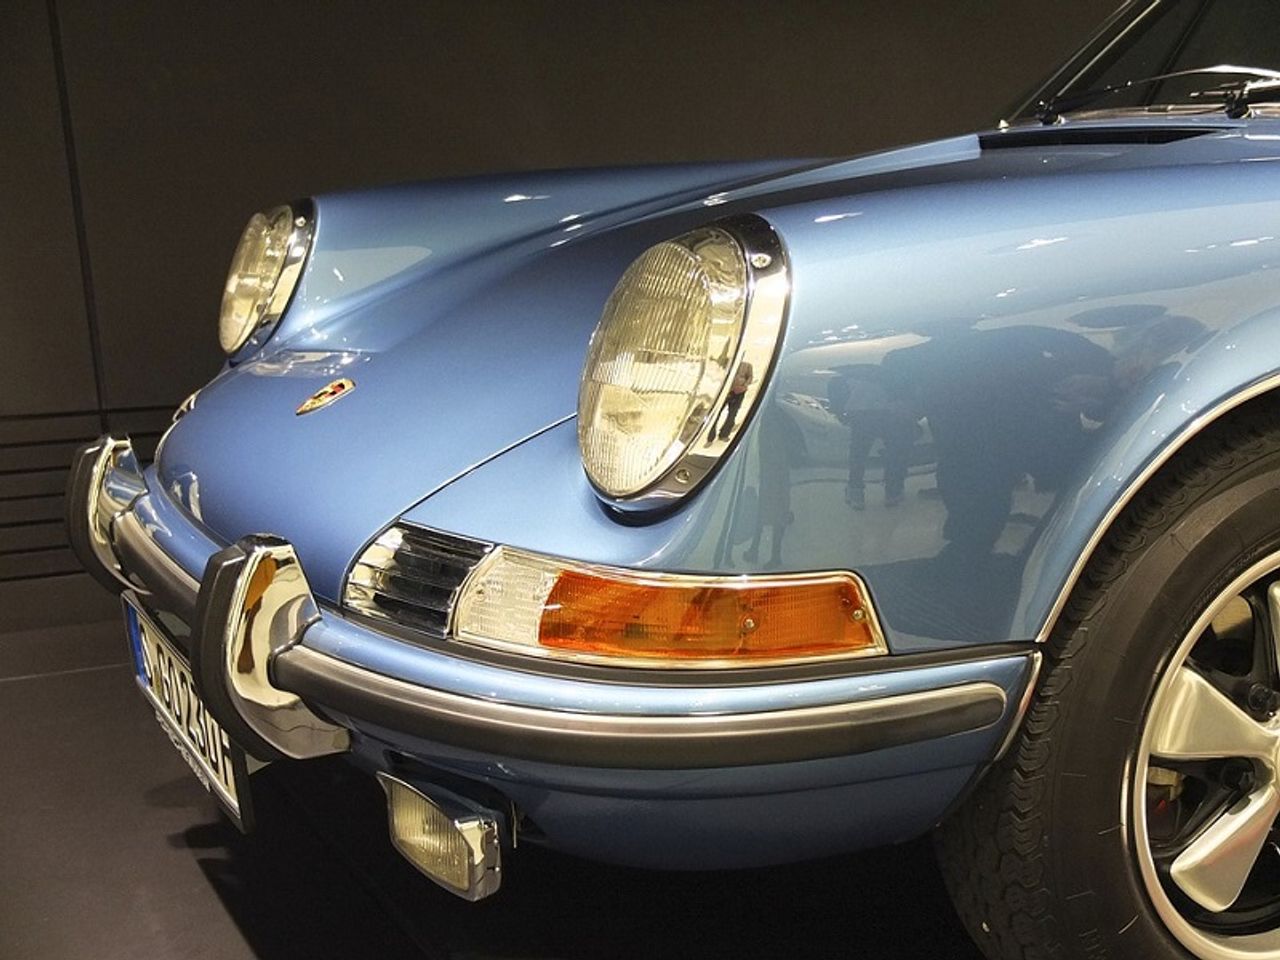 Faszination schnelle Autos im Porsche Museum (2N)